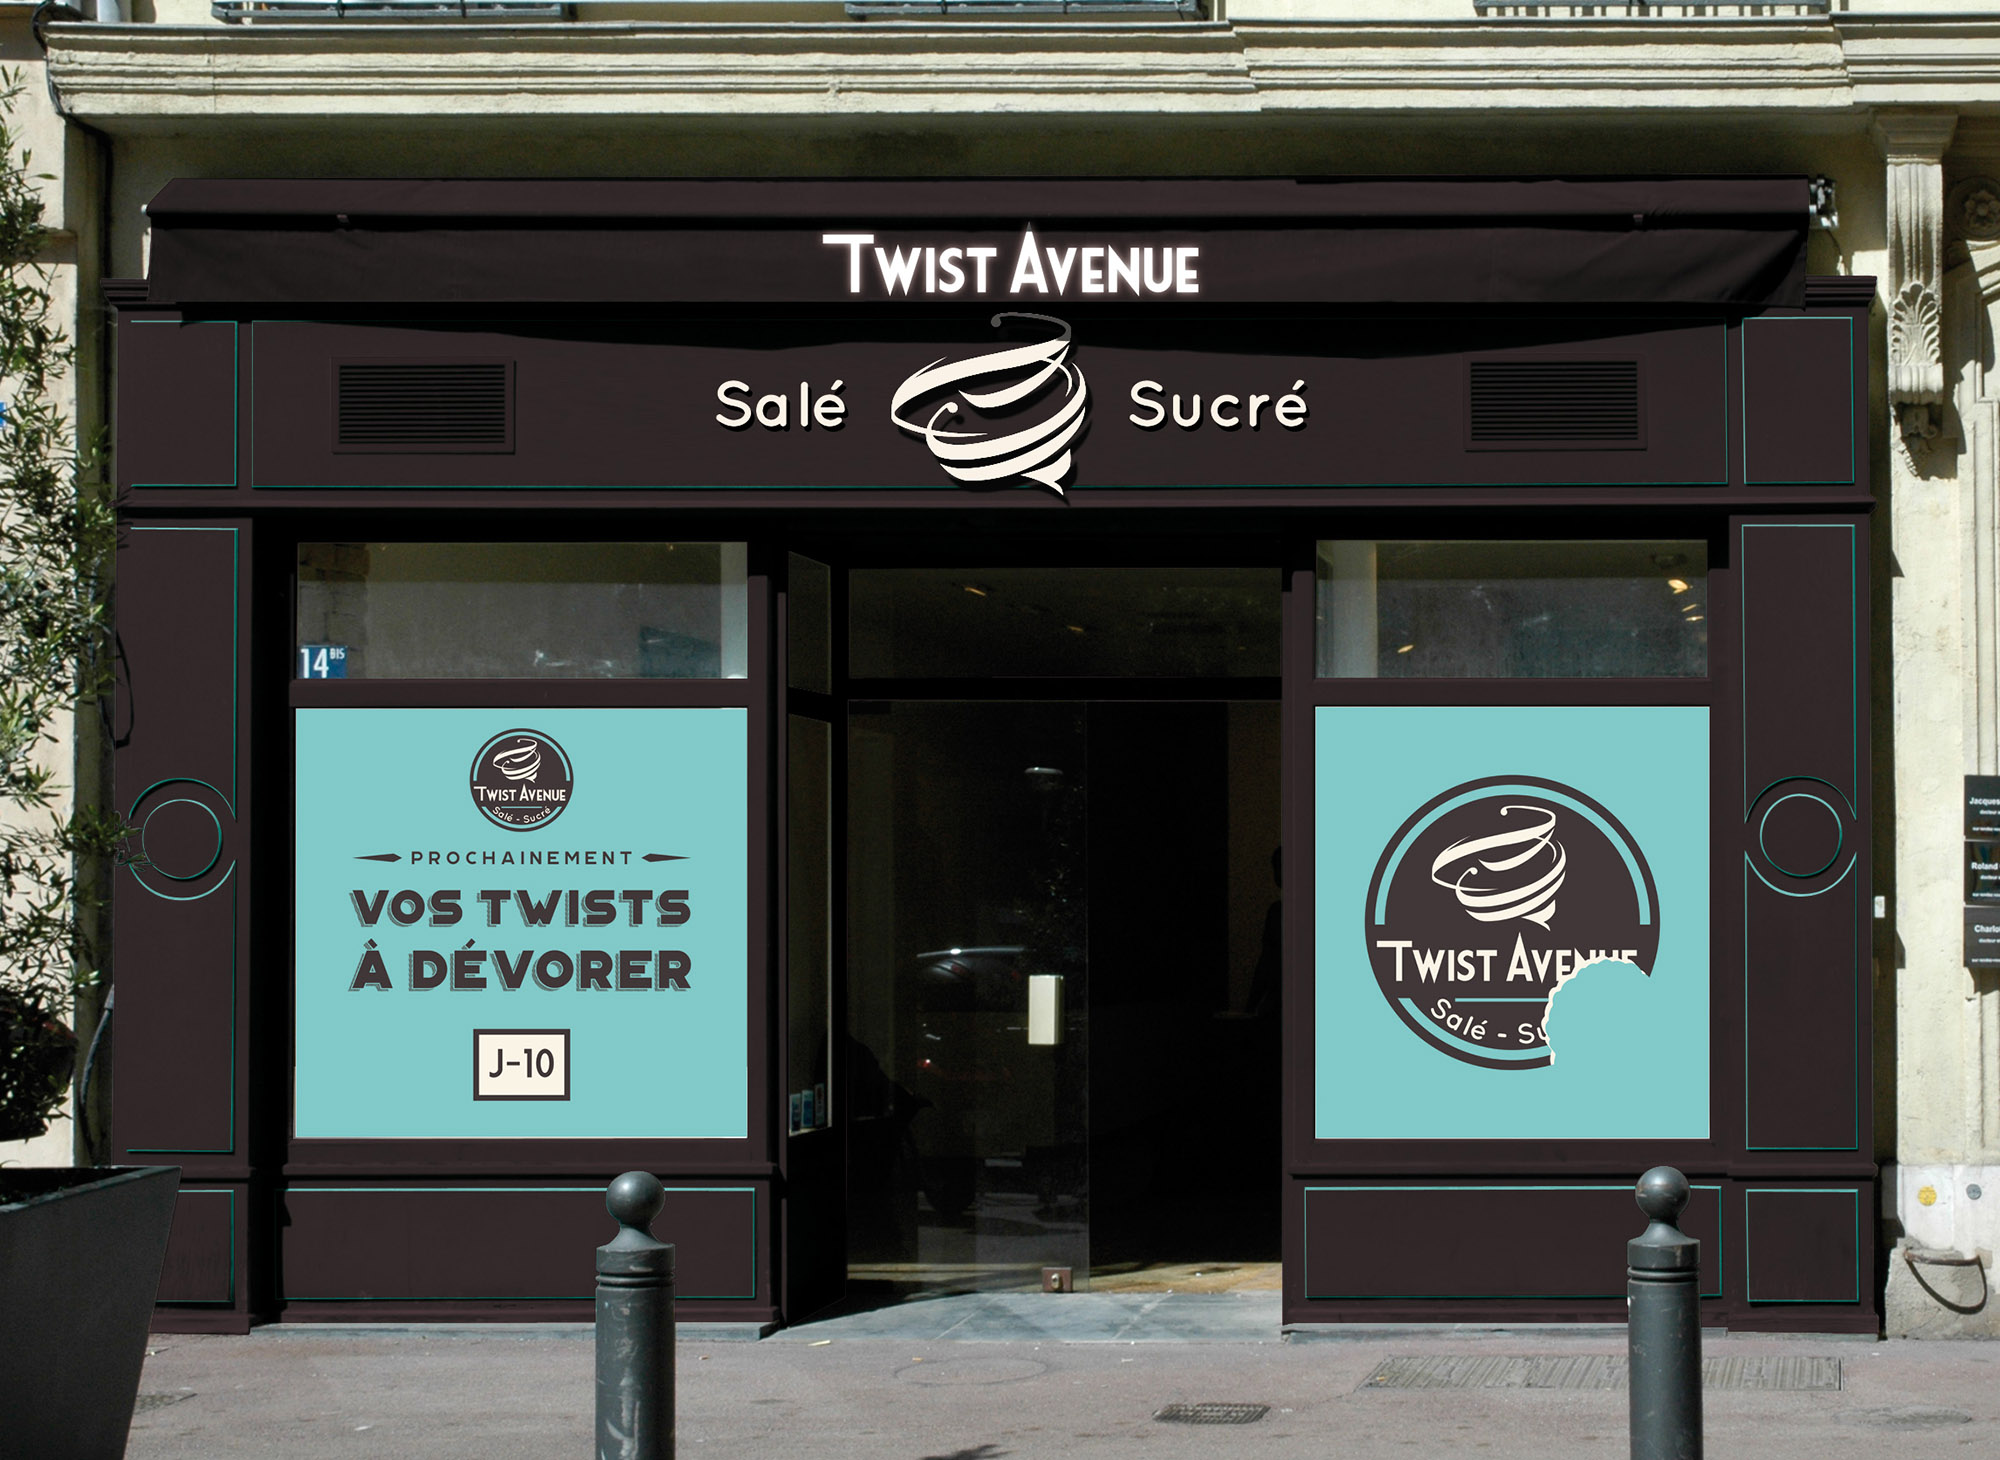 Identité visuelle pour Twist Avenue : Logo, enseigne, stickers j-10…